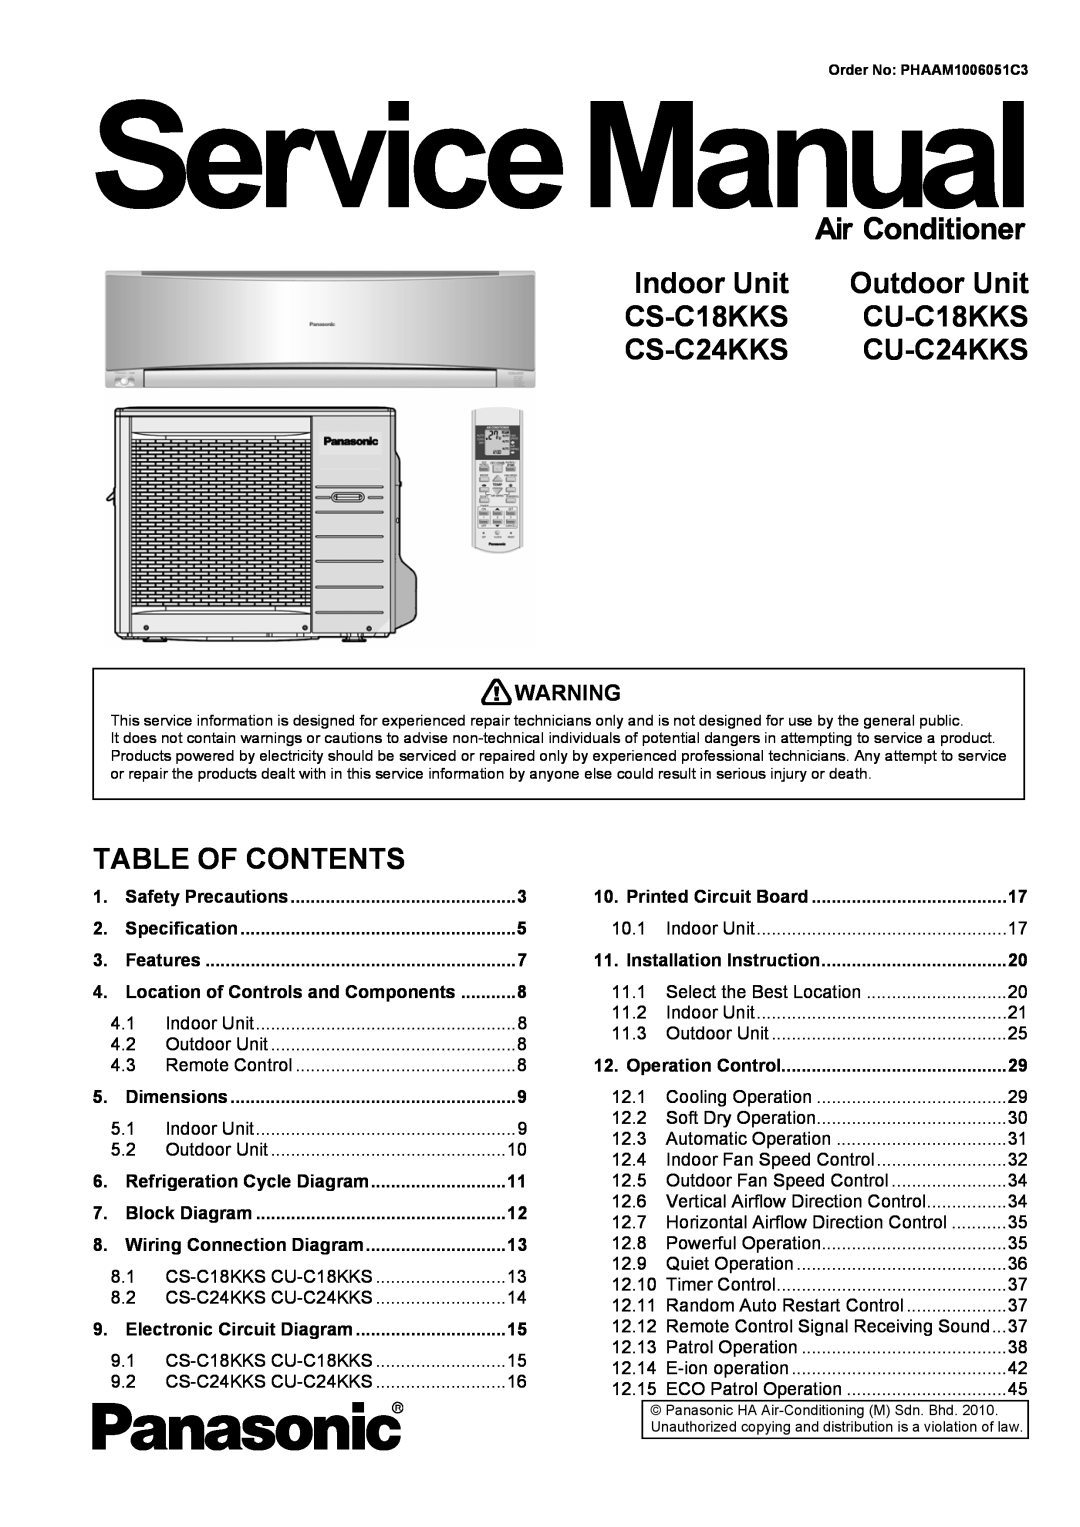 Panasonic CU-C24KKS dimensions Indoor Unit, Outdoor Unit, CS-C18KKS, CU-C18KKS, CS-C24KKS, Table Of Contents 